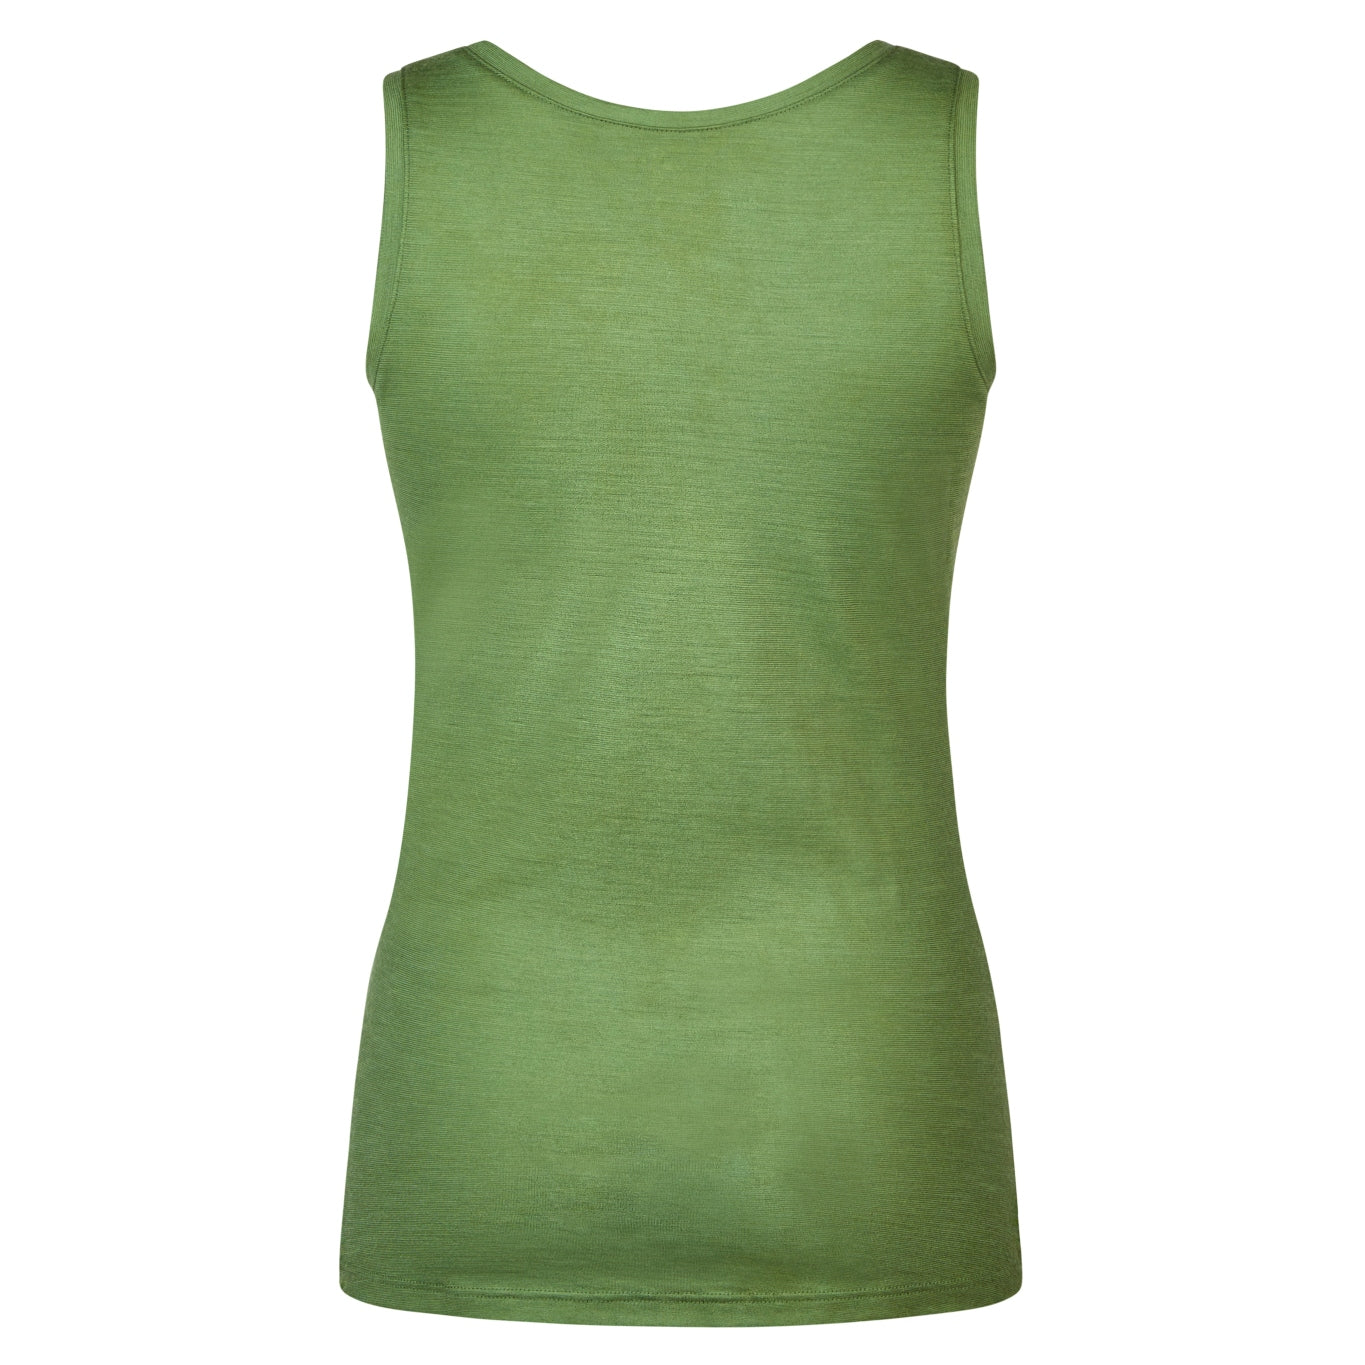 Grüner Tank-Top, Merino Unterhemd für Frauen aus regionaler und biologischer Wolle, in Deutschland produziert